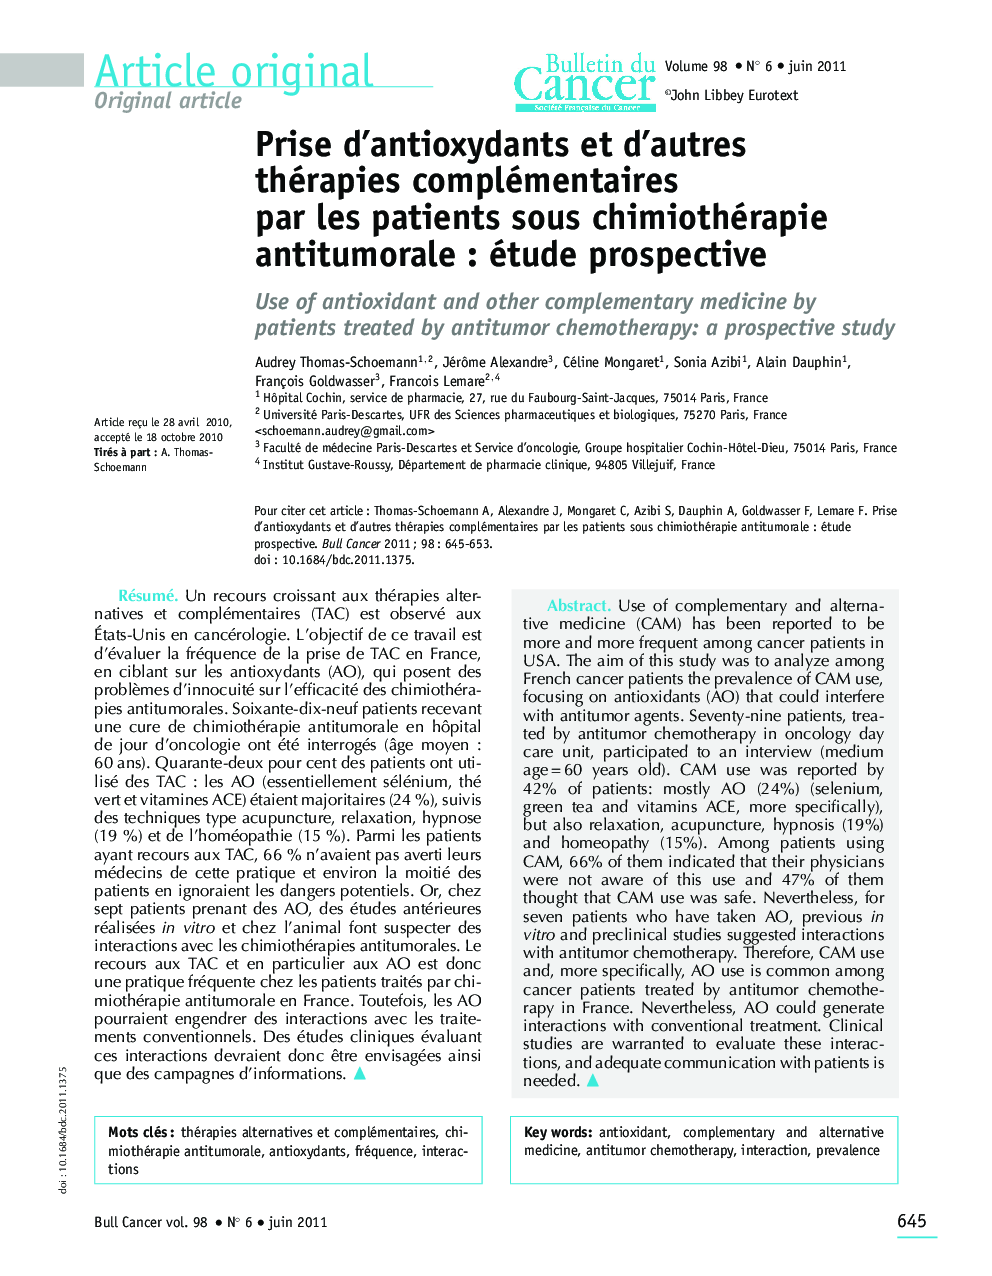 Prise d'antioxydants et d'autres thérapies complémentaires par les patients sous chimiothérapie antitumorale : étude prospective